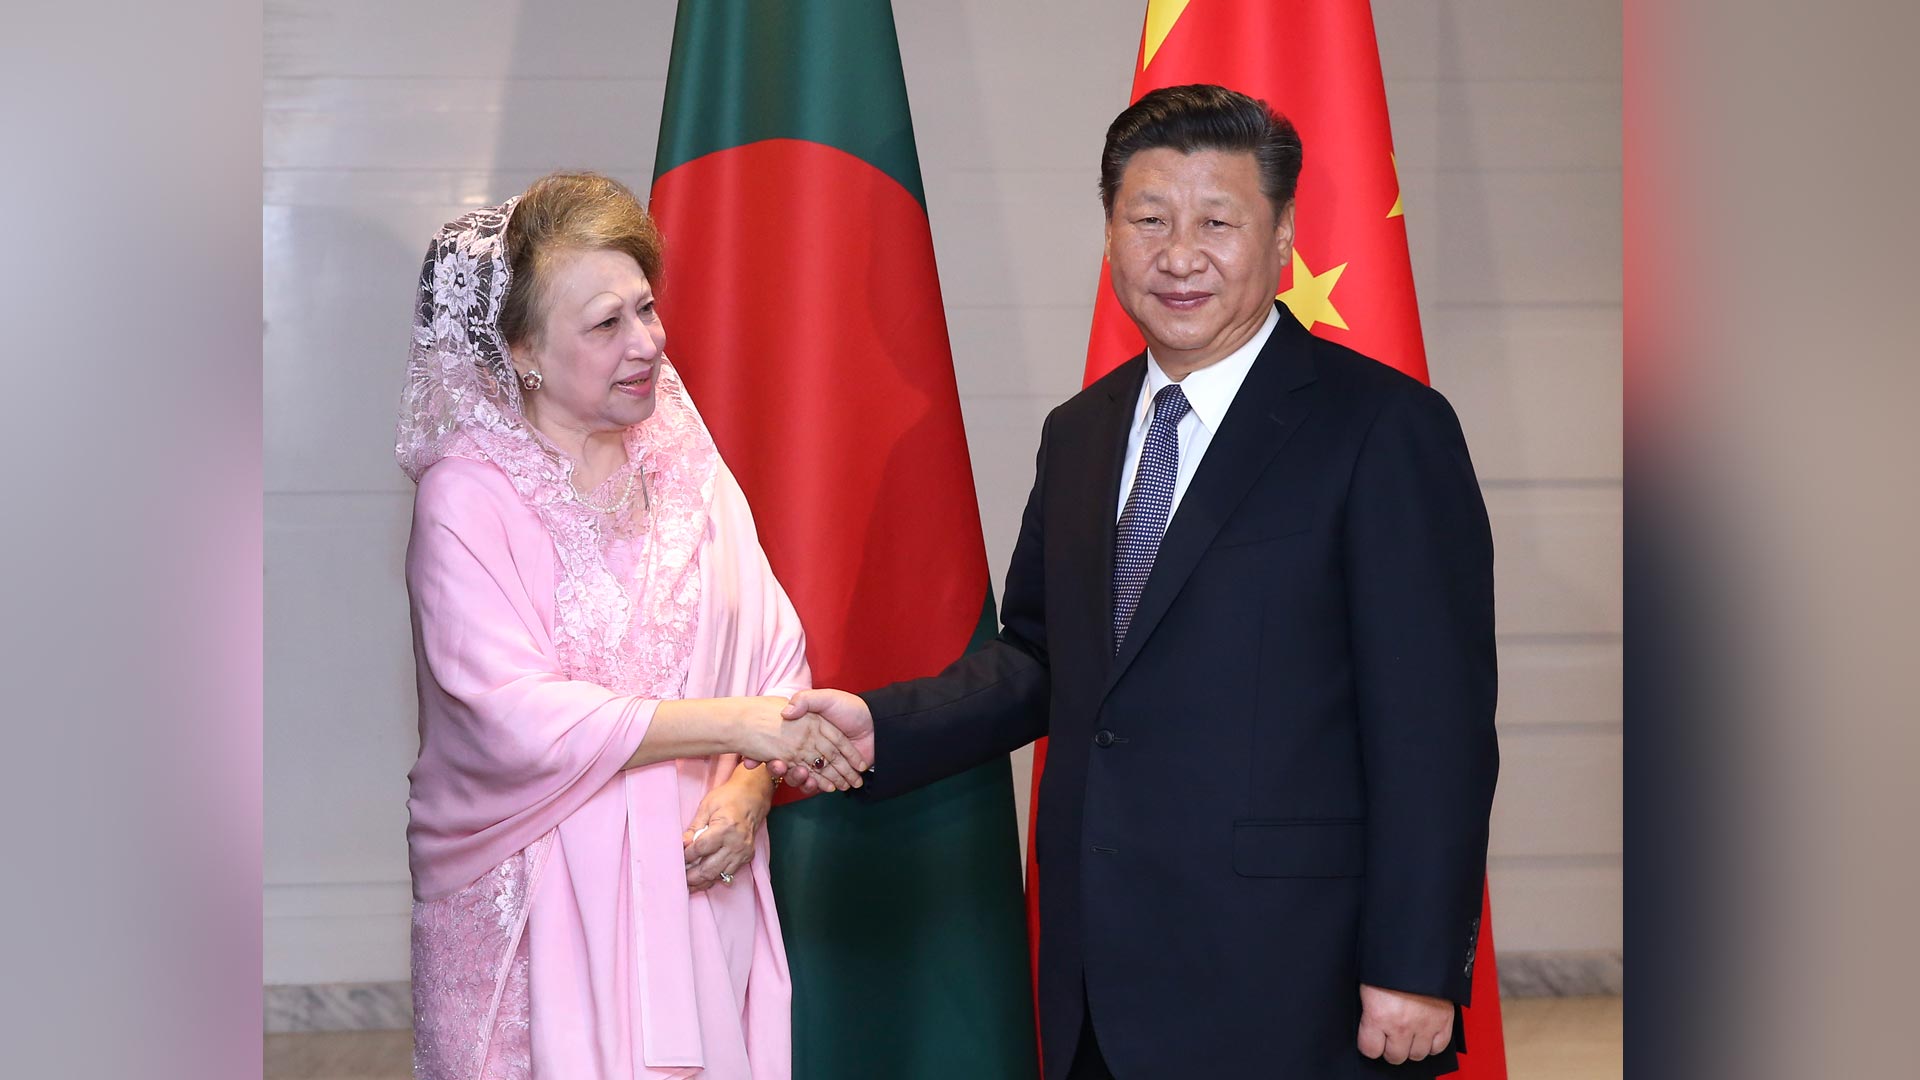 习近平会见孟加拉国民族主义党主席卡莉达·齐亚